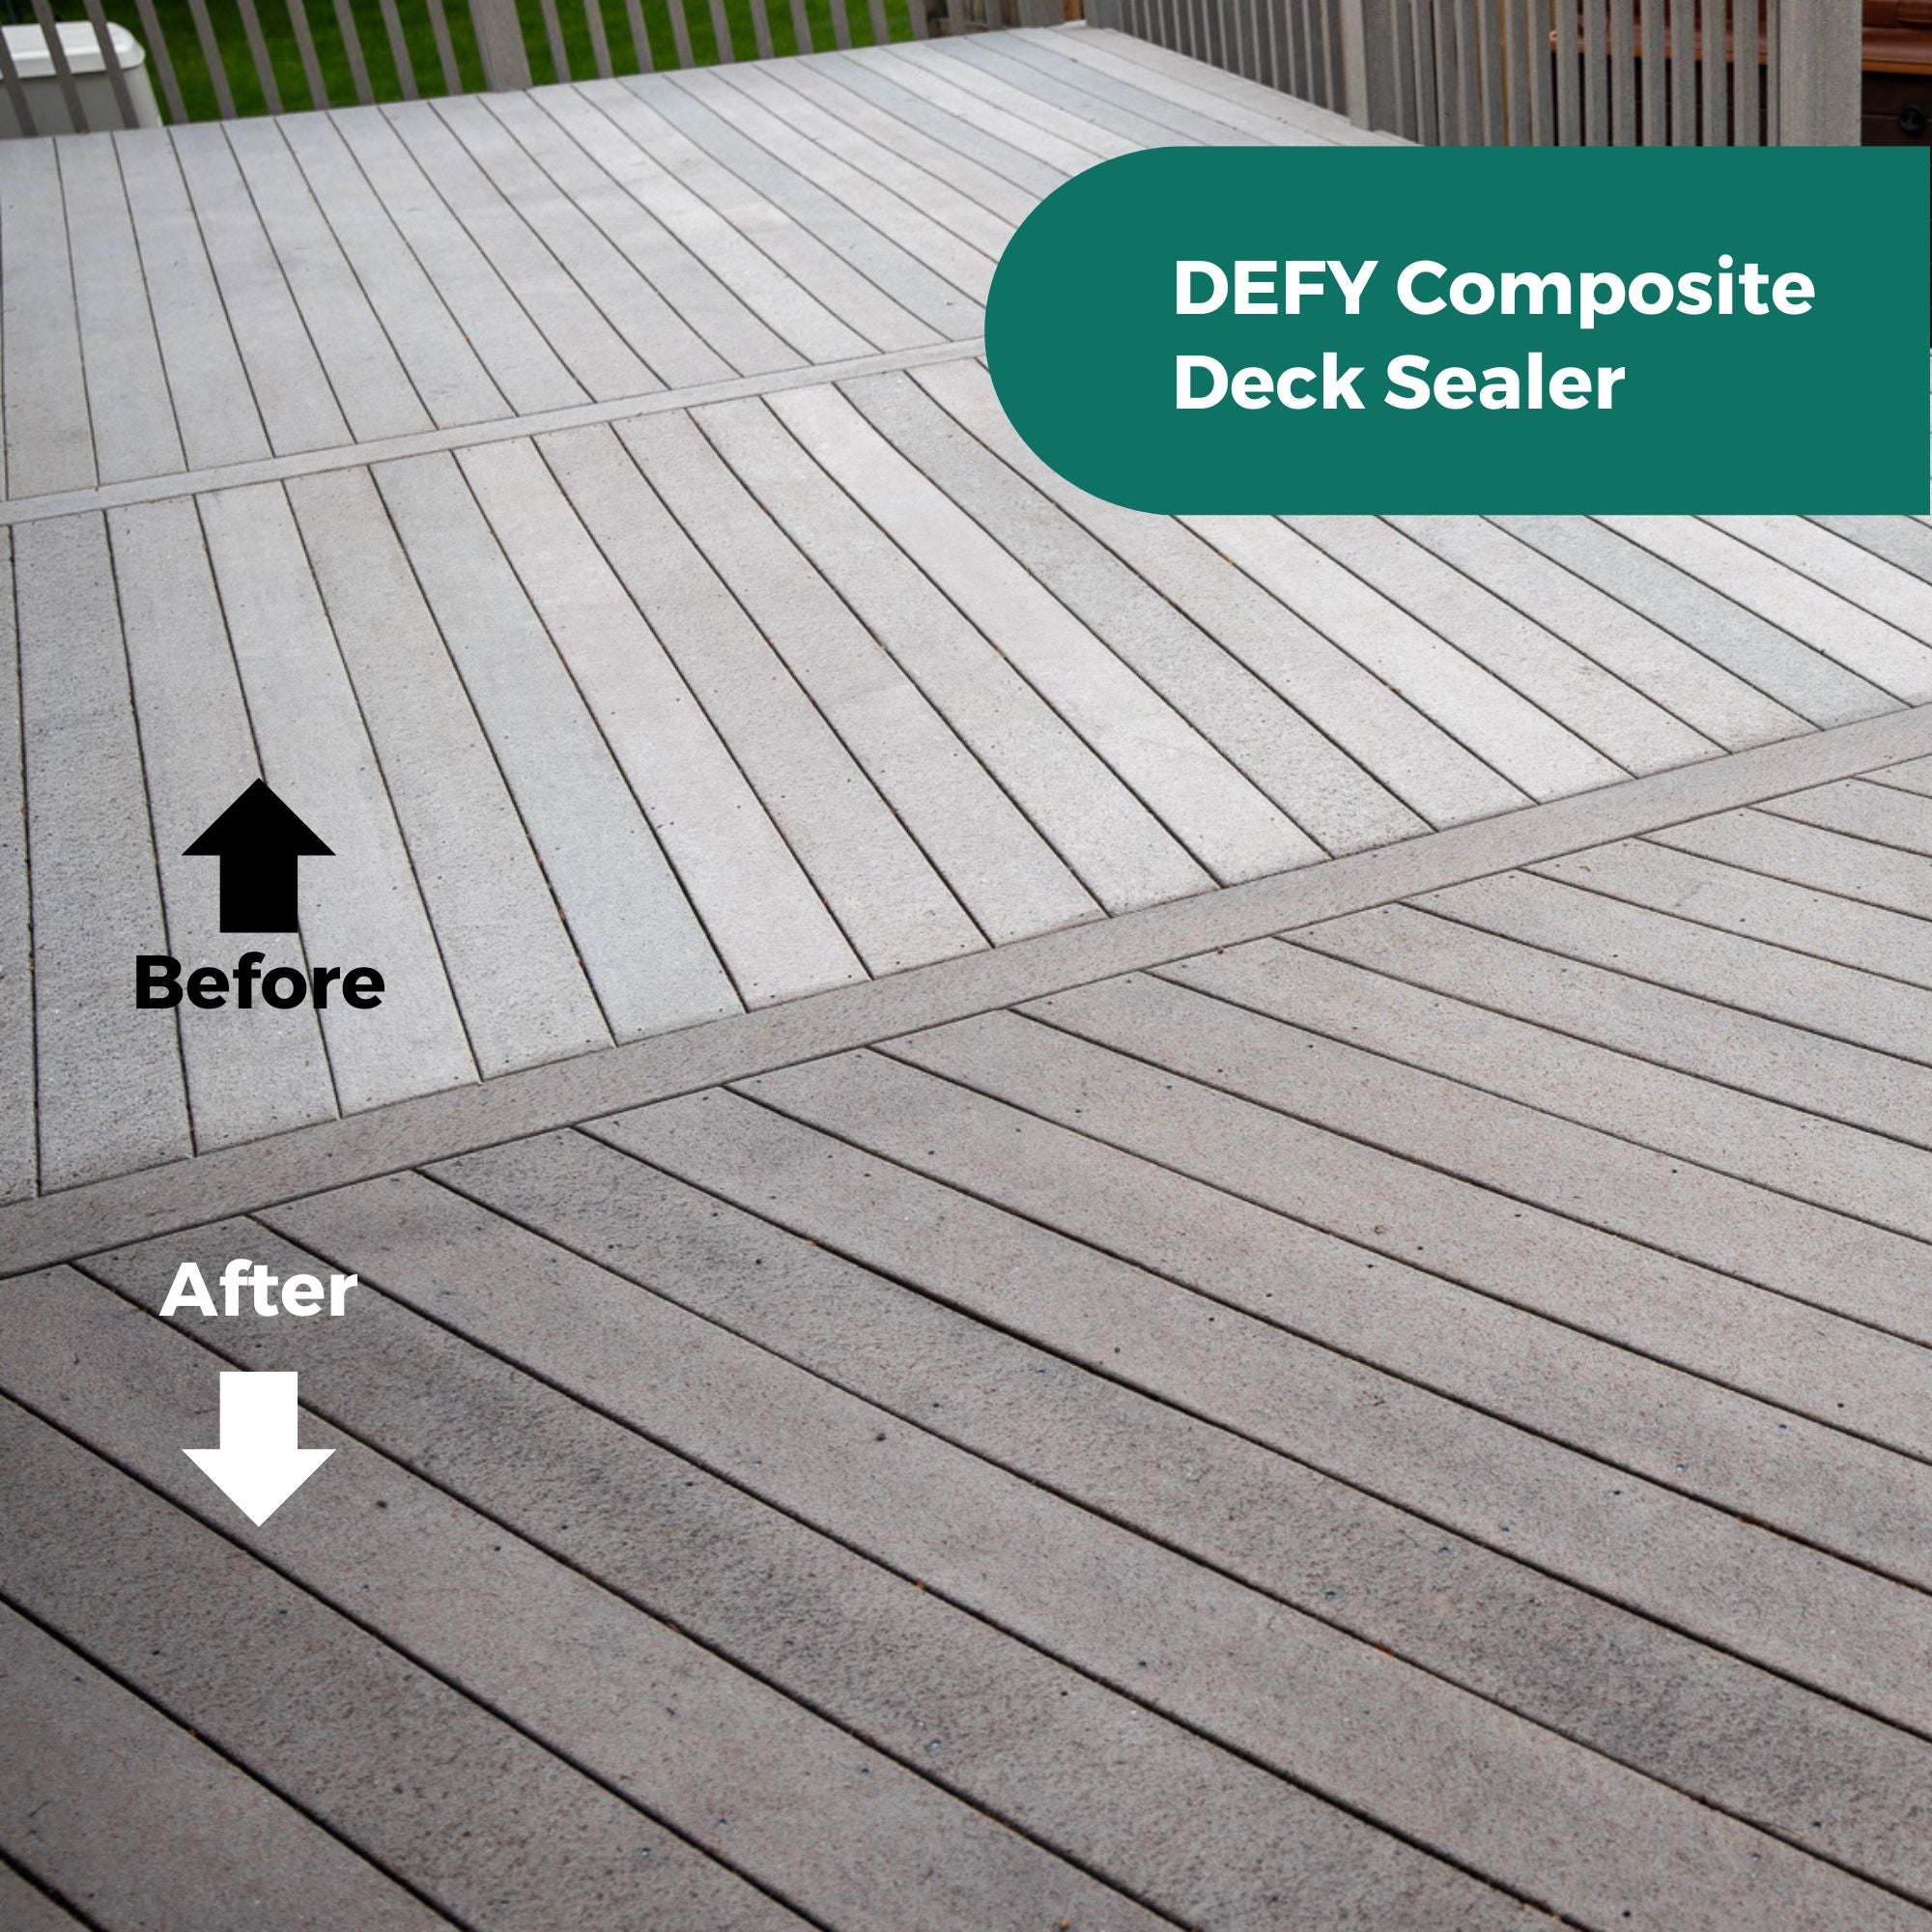 DEFY Composite Deck Sealer